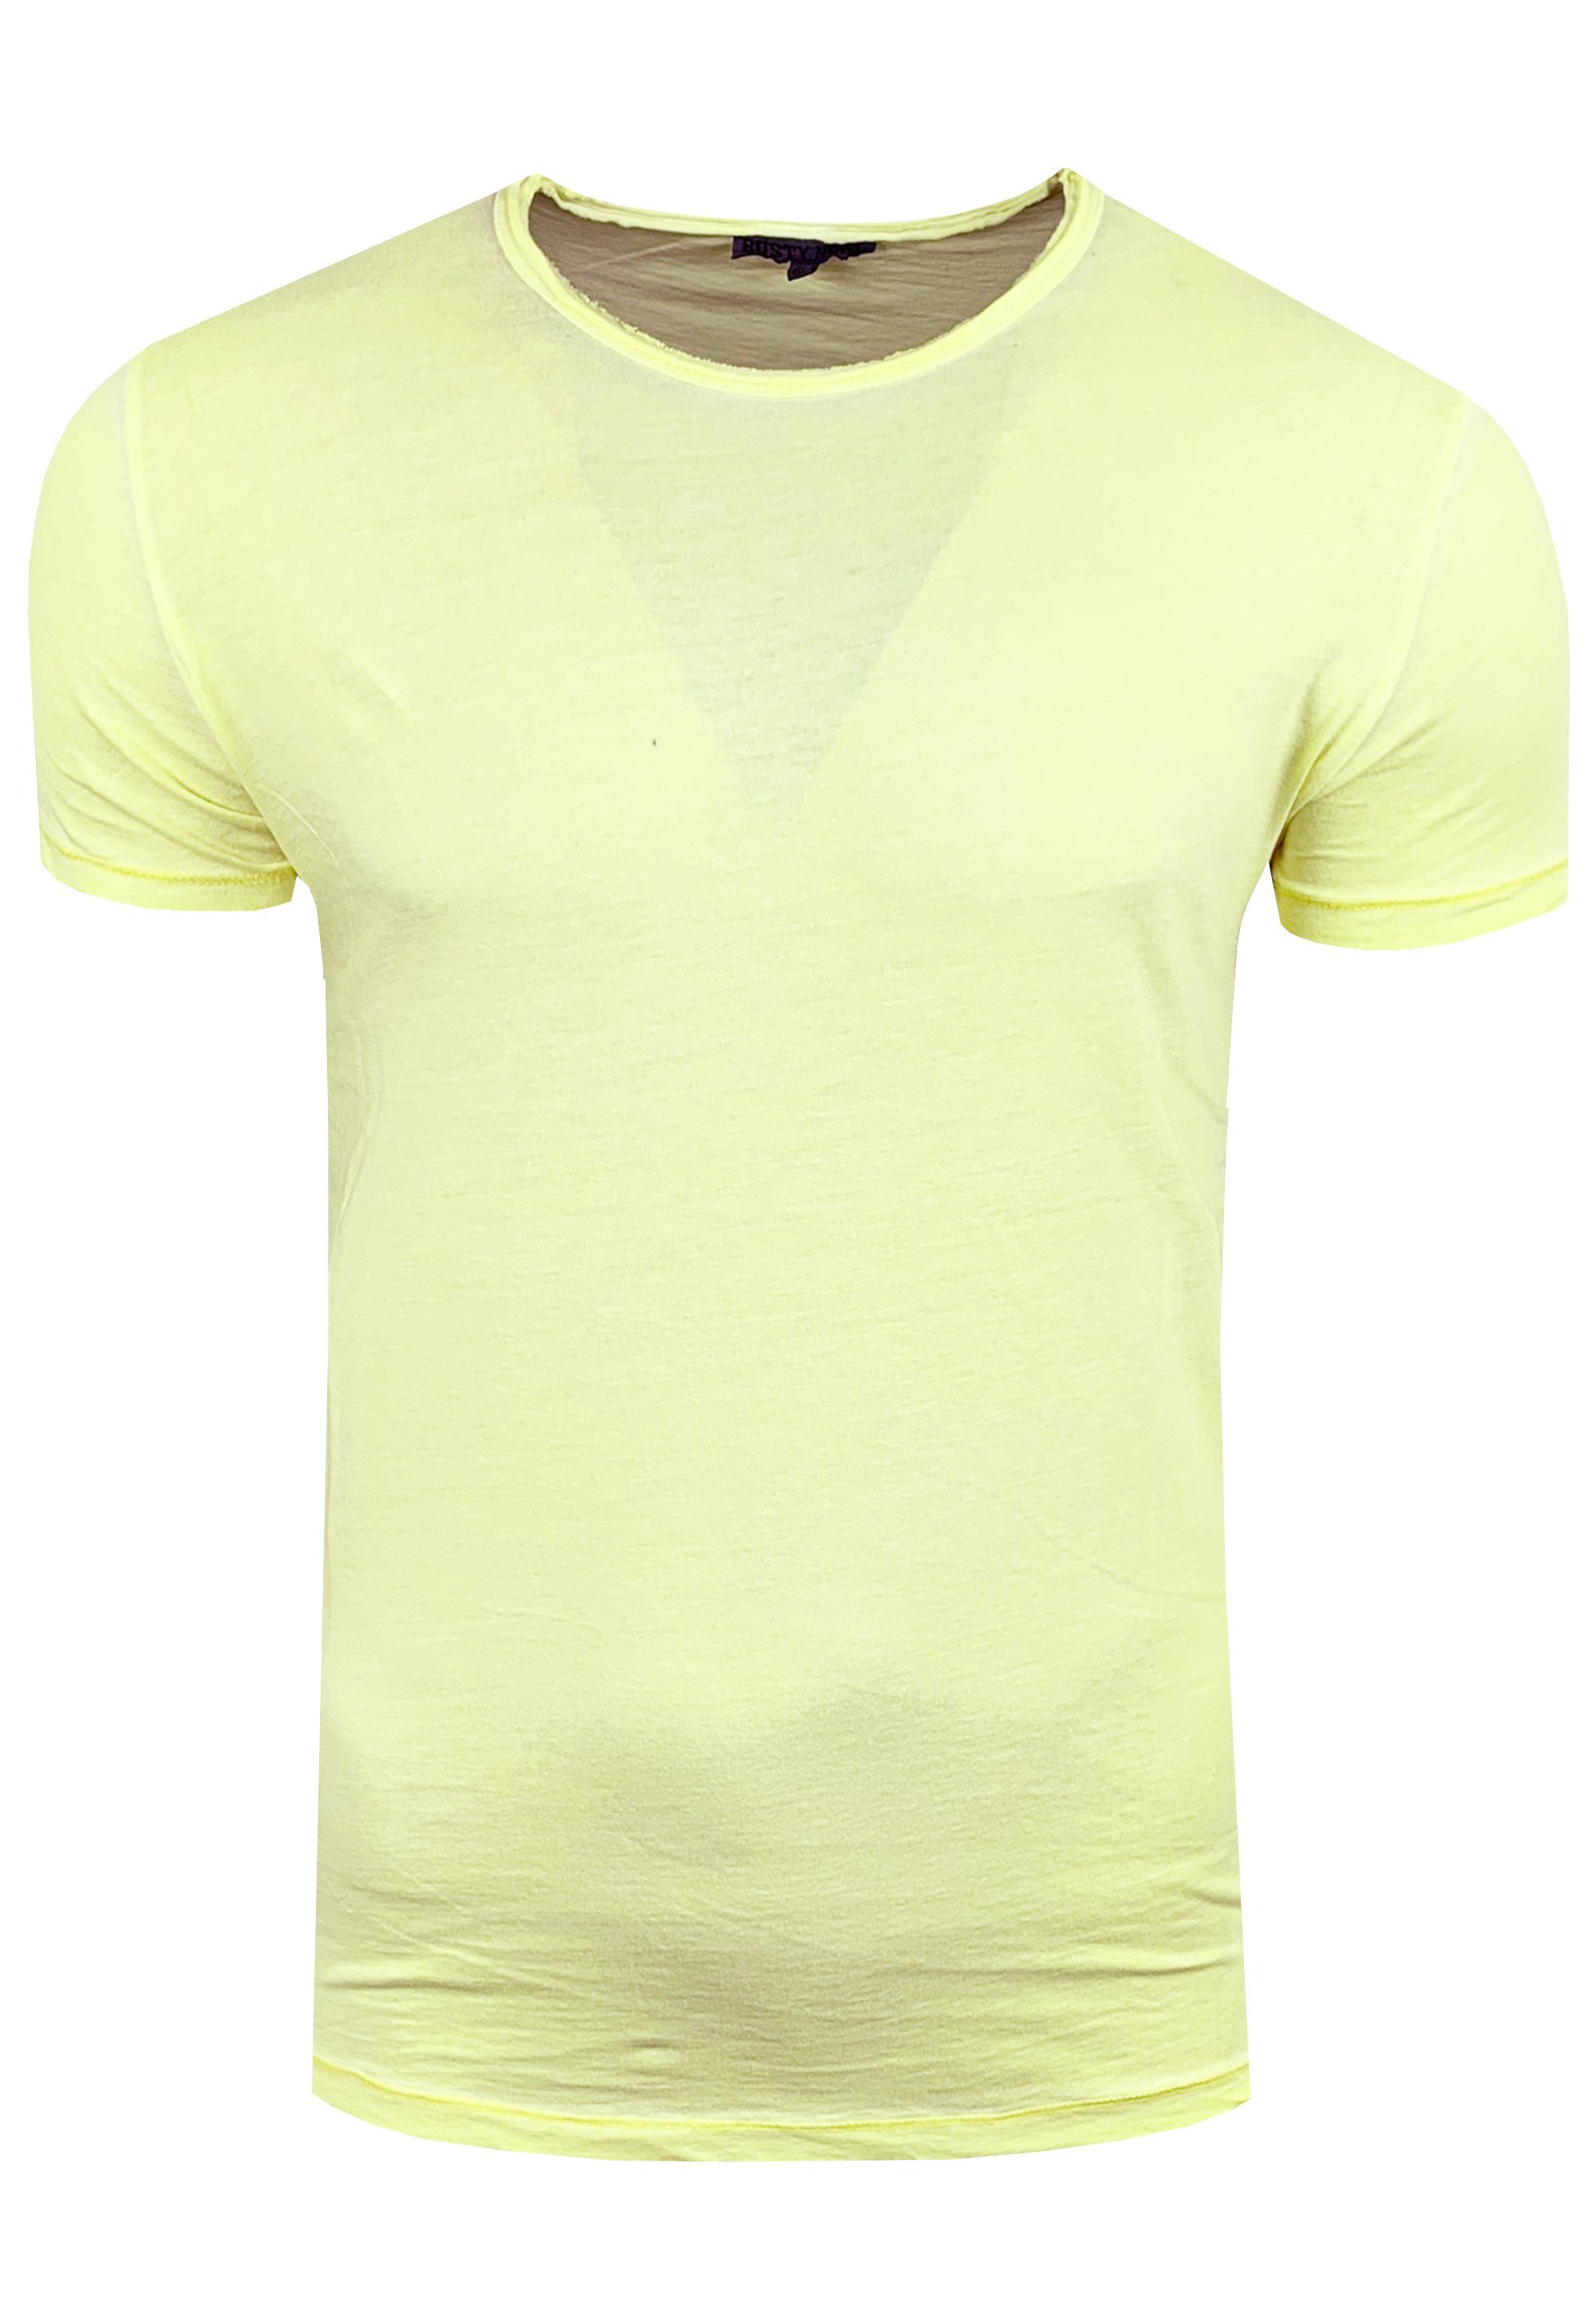 gelb in Vintage-Optik T-Shirt angesagter Rusty Neal